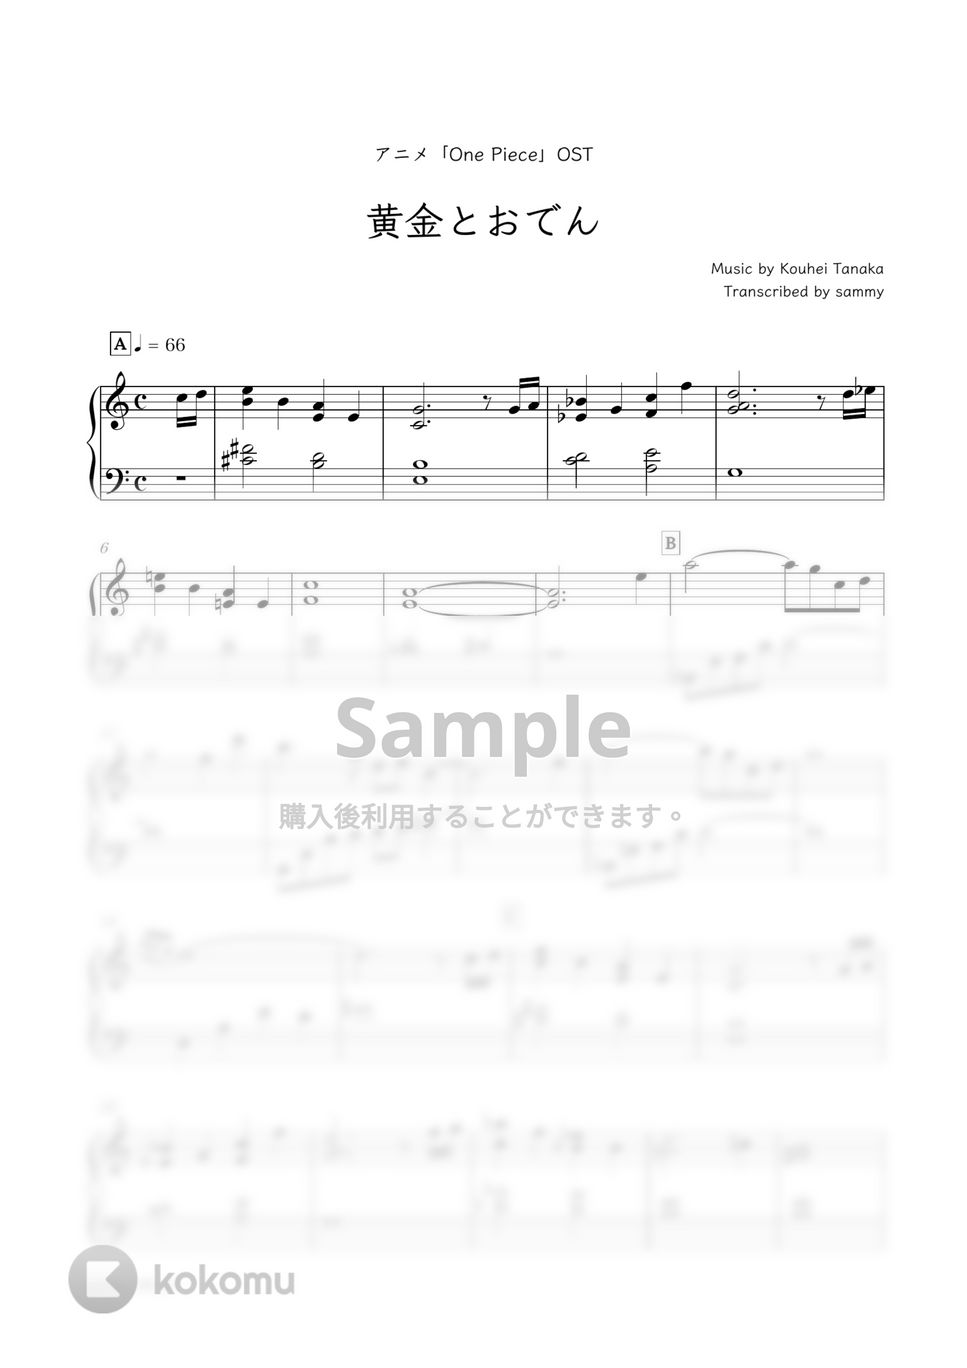 アニメ『ONE PIECE』OST - 黄金とおでん by sammy